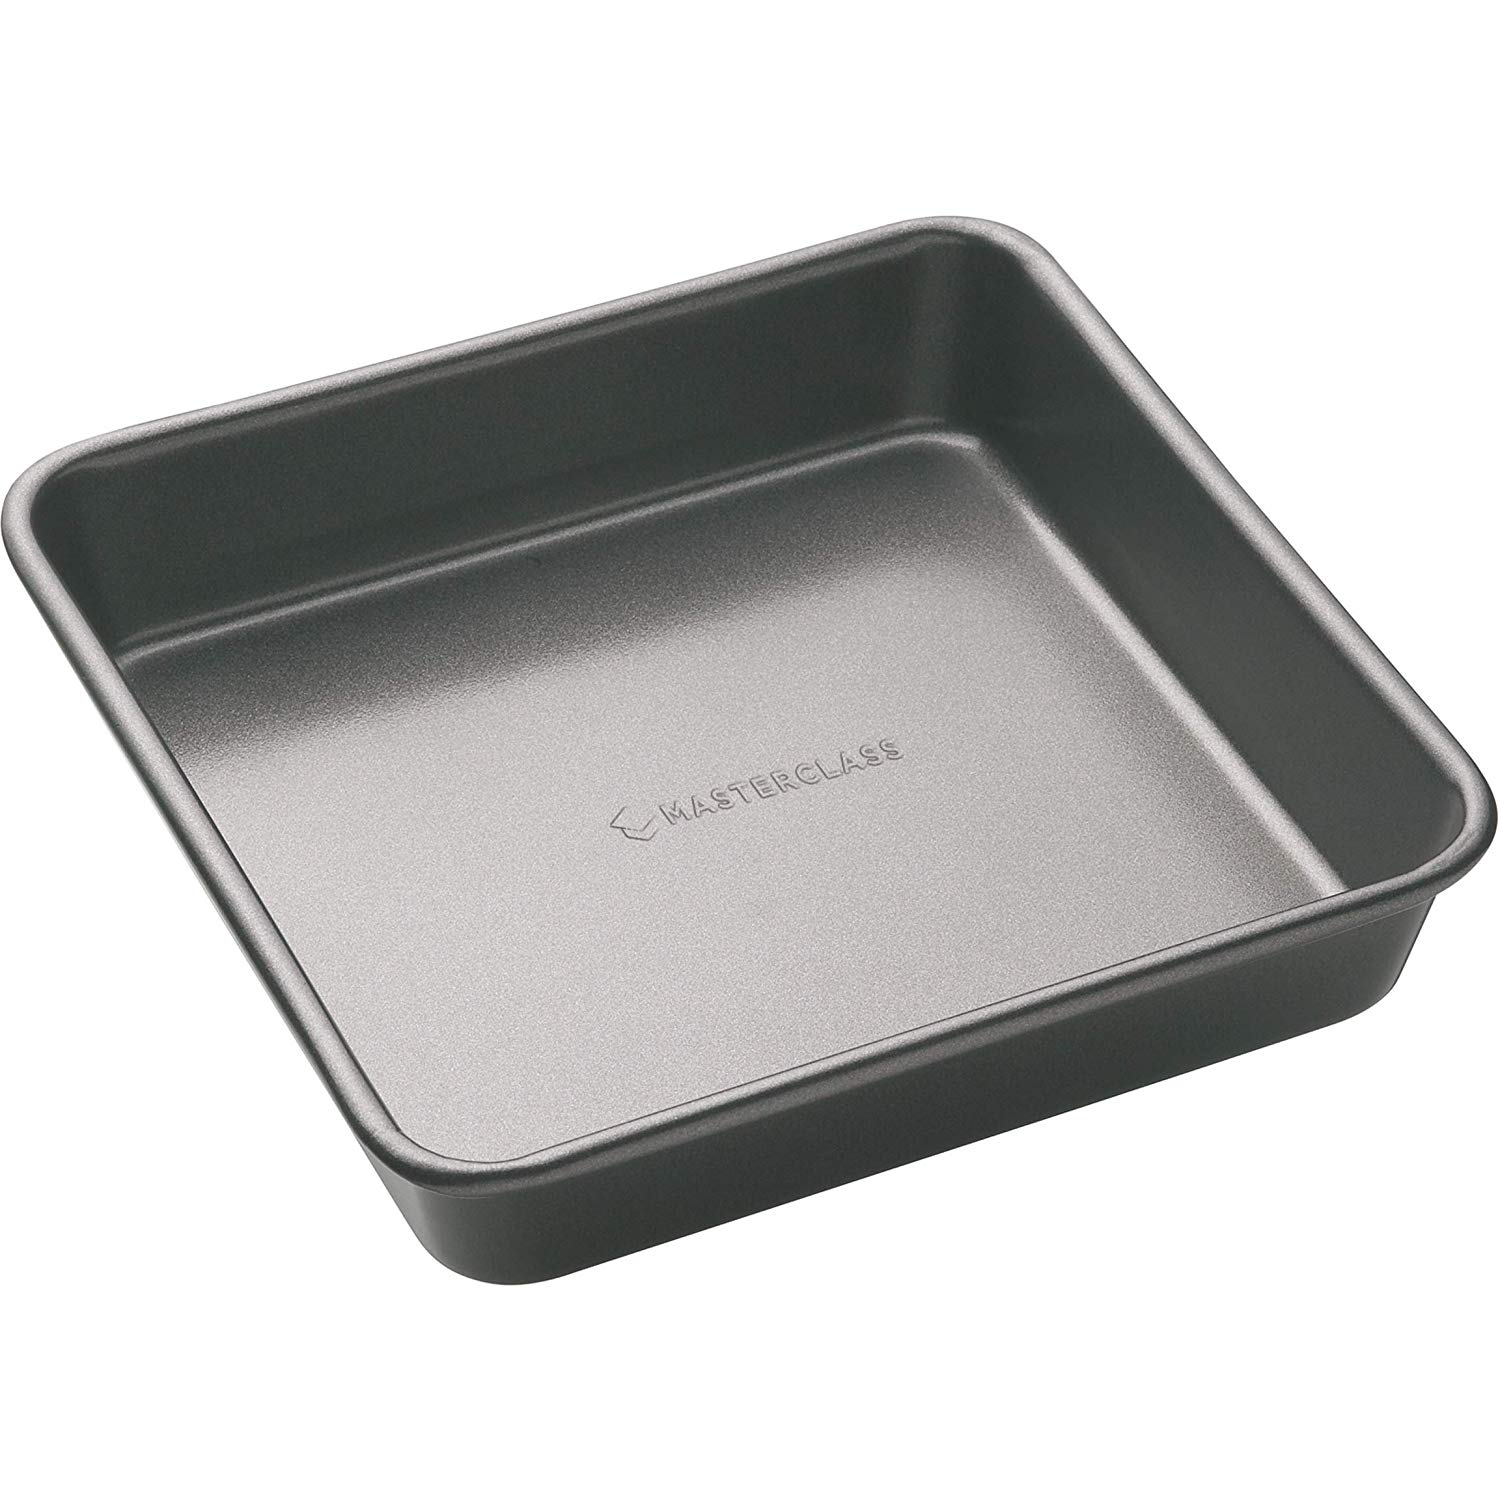 9 inch baking pan